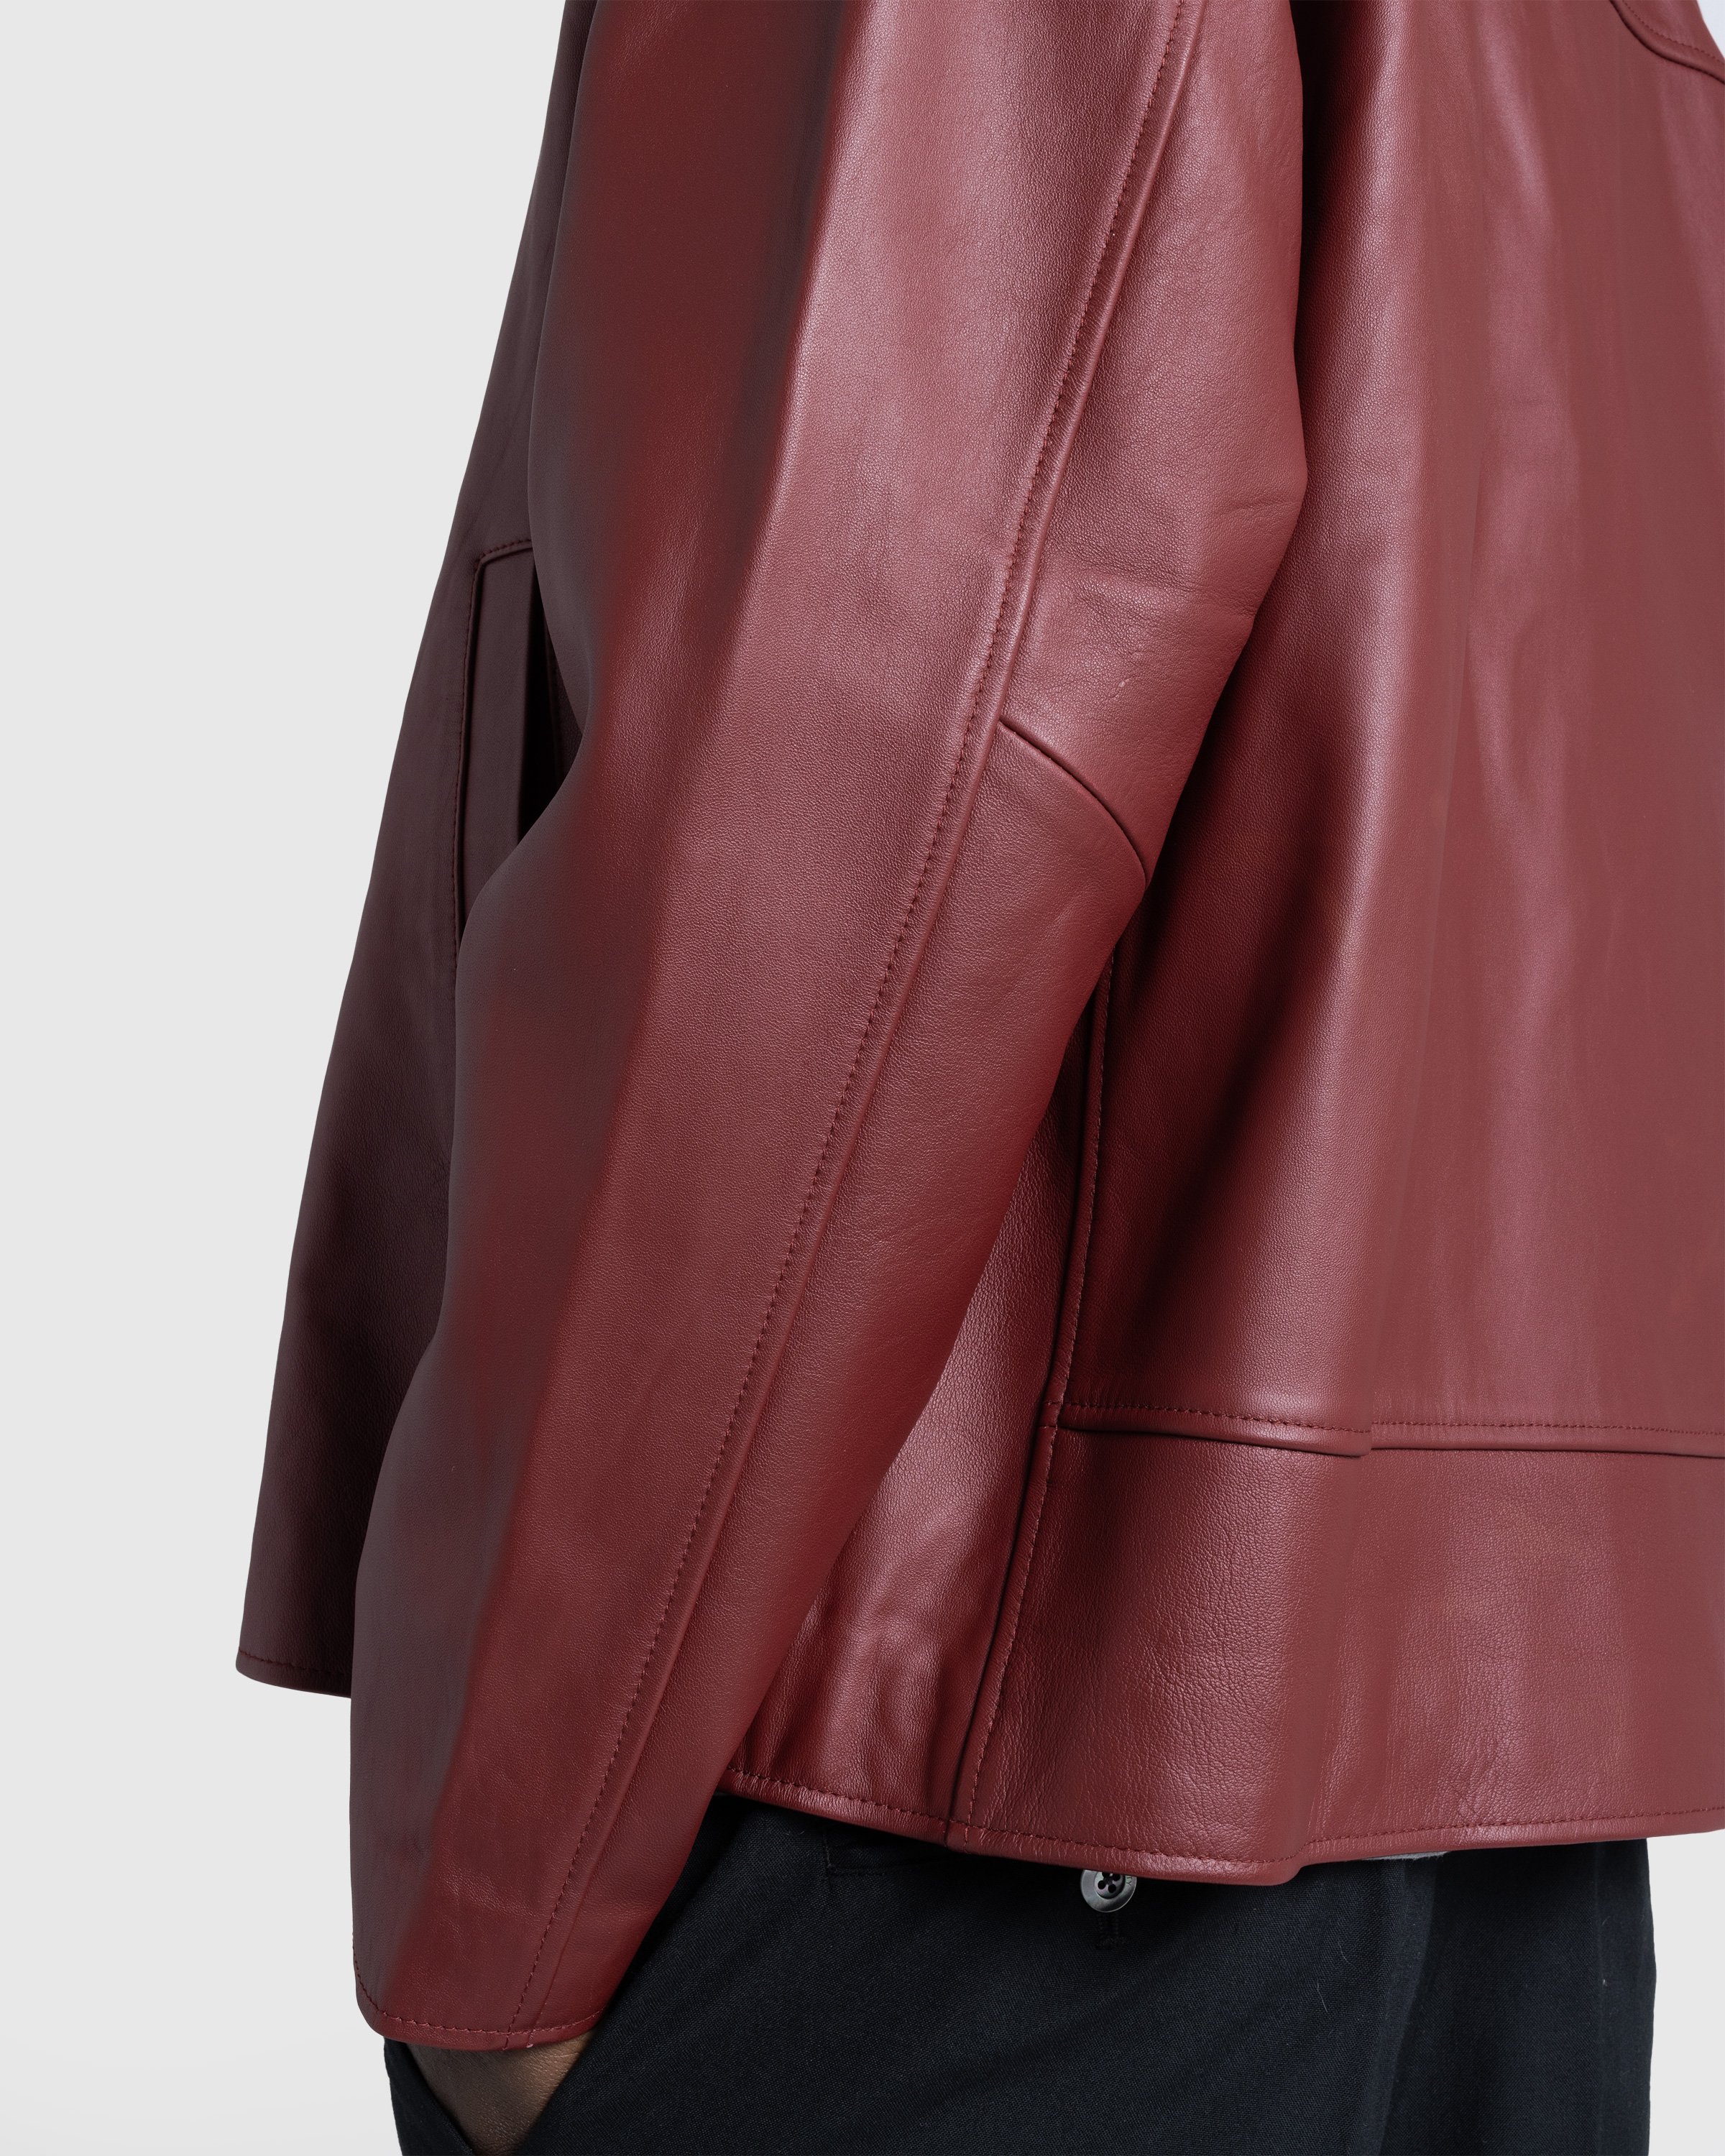 Highsnobiety HS05 - Leather Jacket Burgundy - Clothing - Burgundy - Image 7